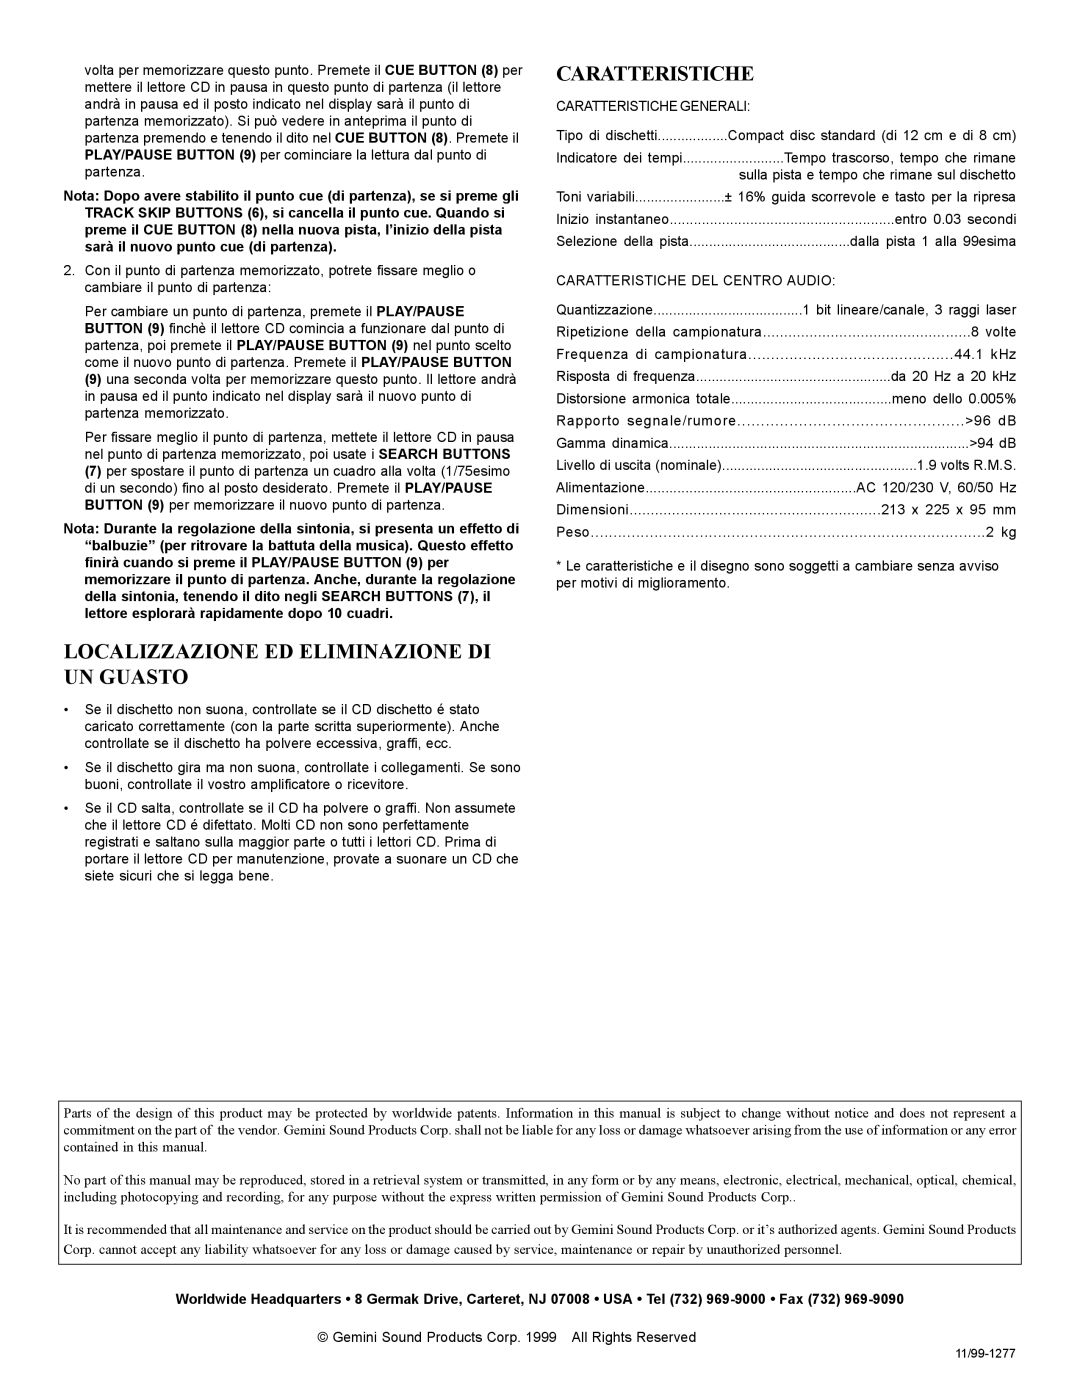 Gemini CDJ-10 manual Caratteristiche, Localizzazione Ed Eliminazione Di Un Guasto 